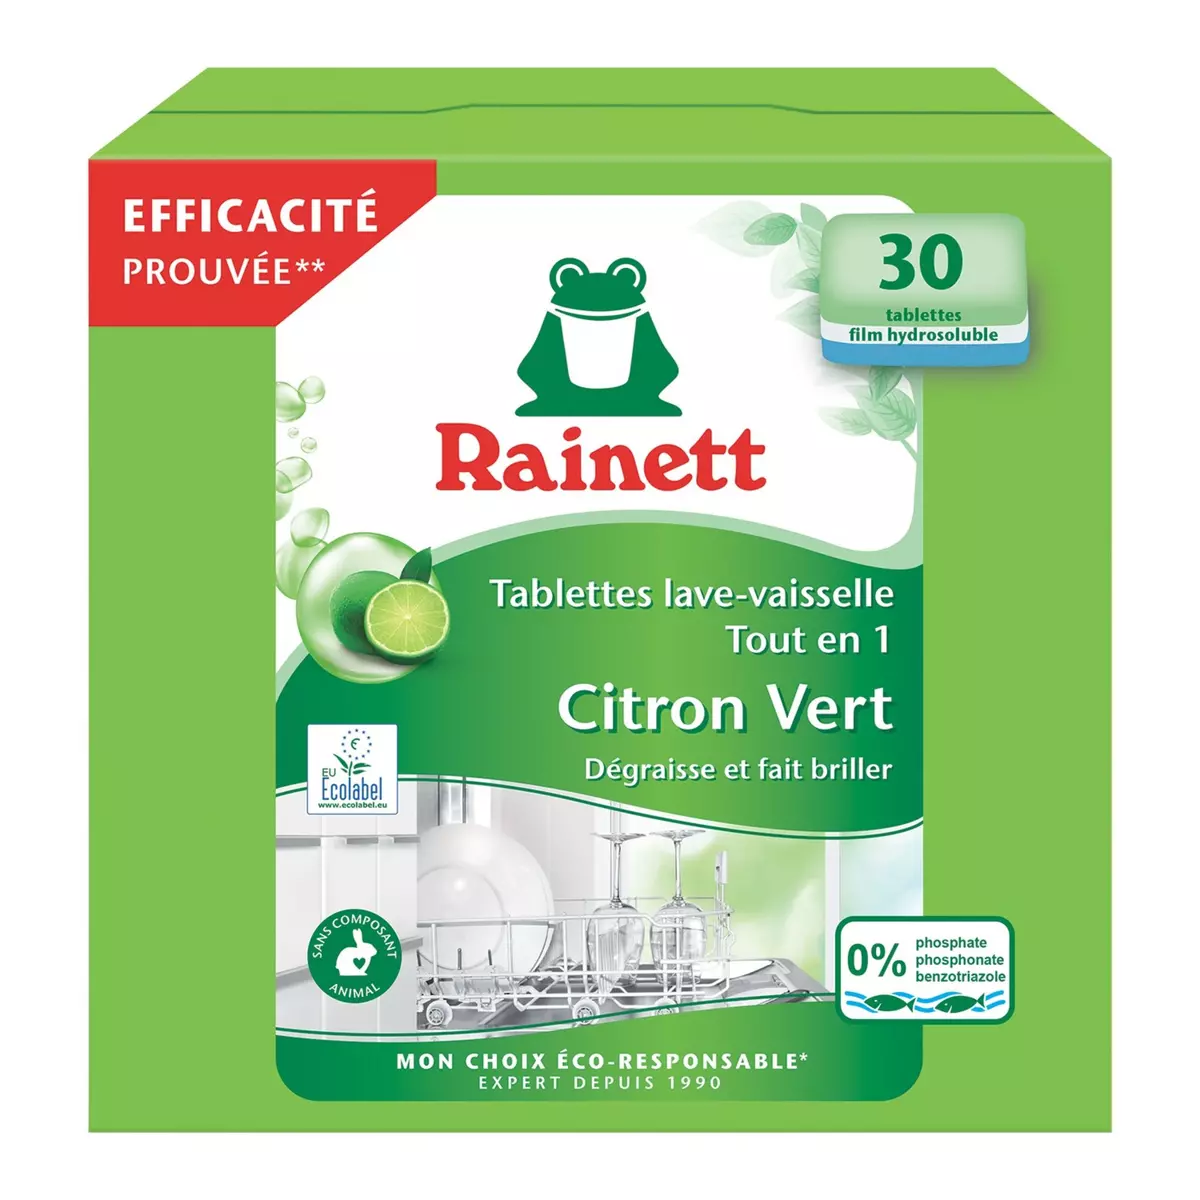 RAINETT Tablettes lave-vaisselle écologique au citron vert 30 tablettes